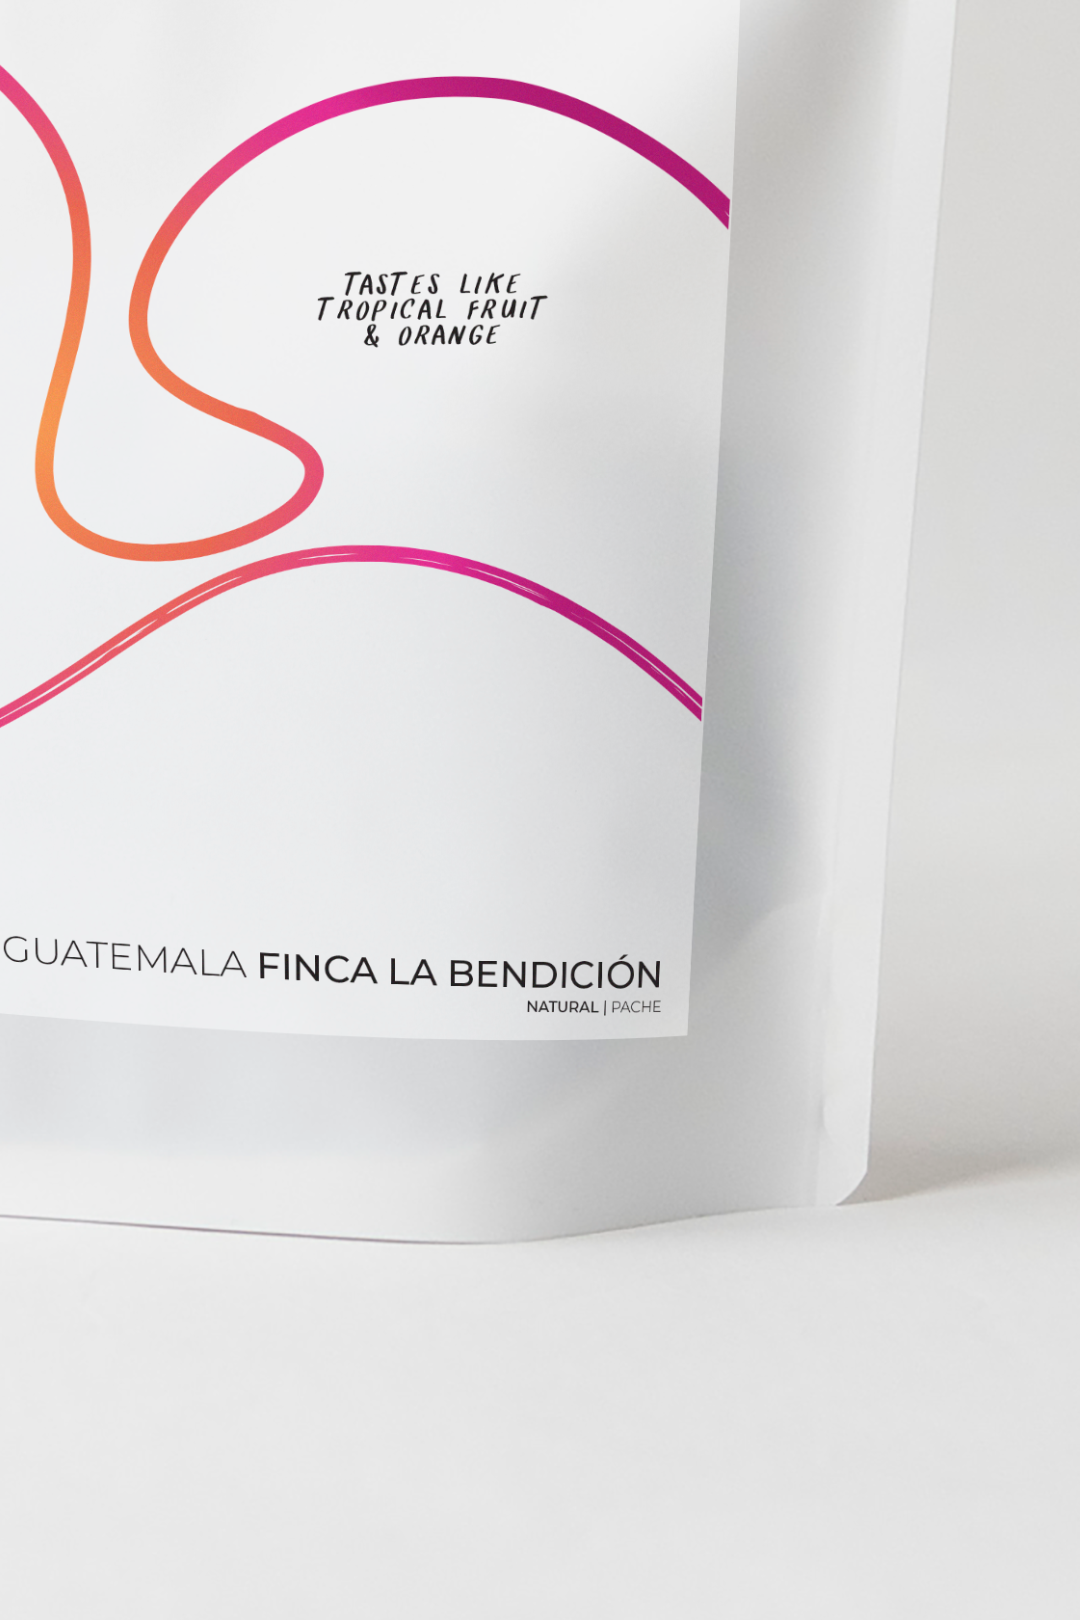 Guatemala - Finca La Bendición | filter - Gust Coffee Roasters